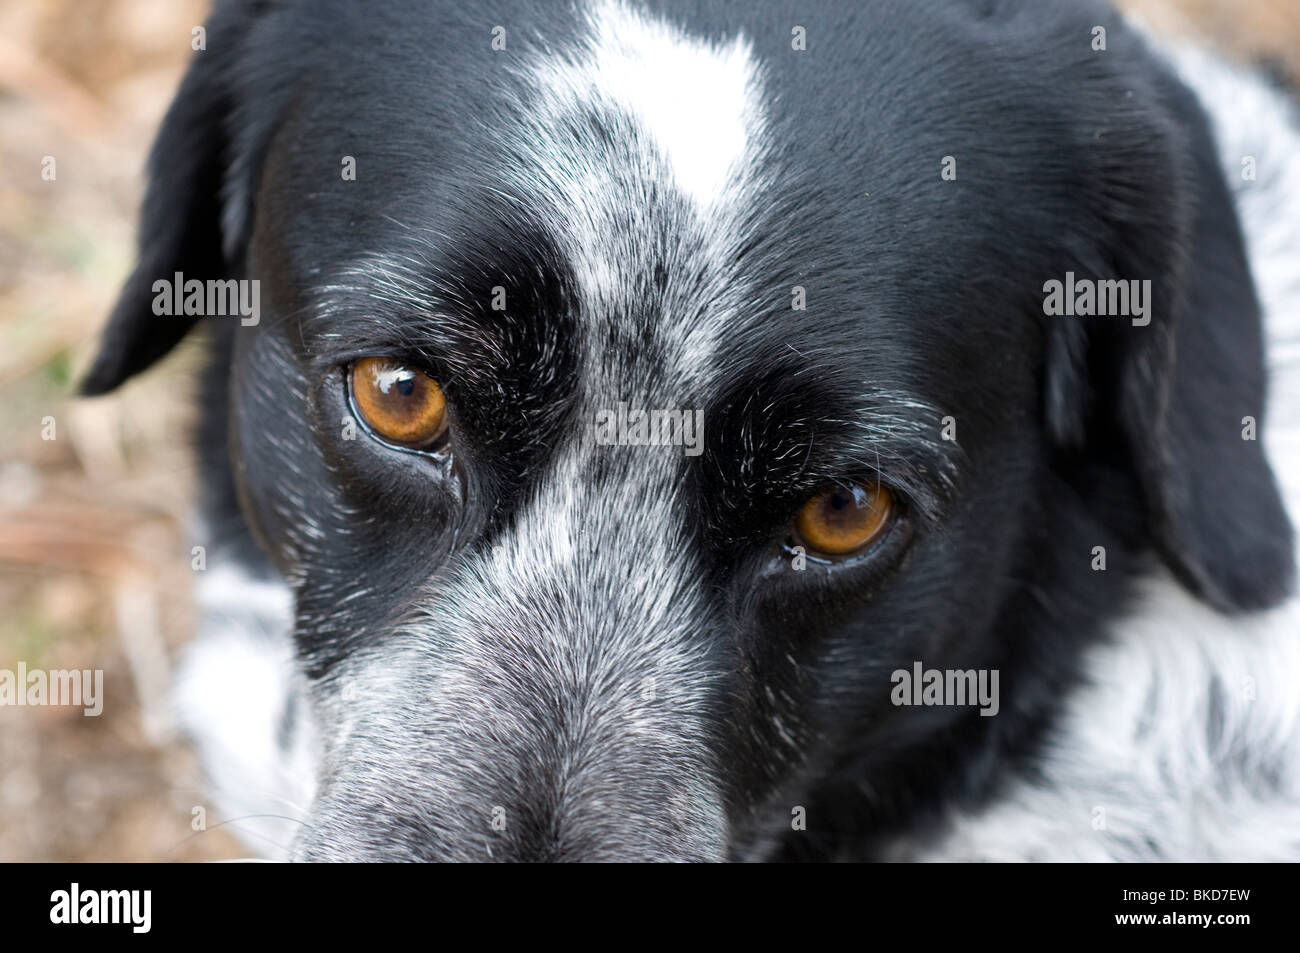 Mixed breed dog Stock Photo